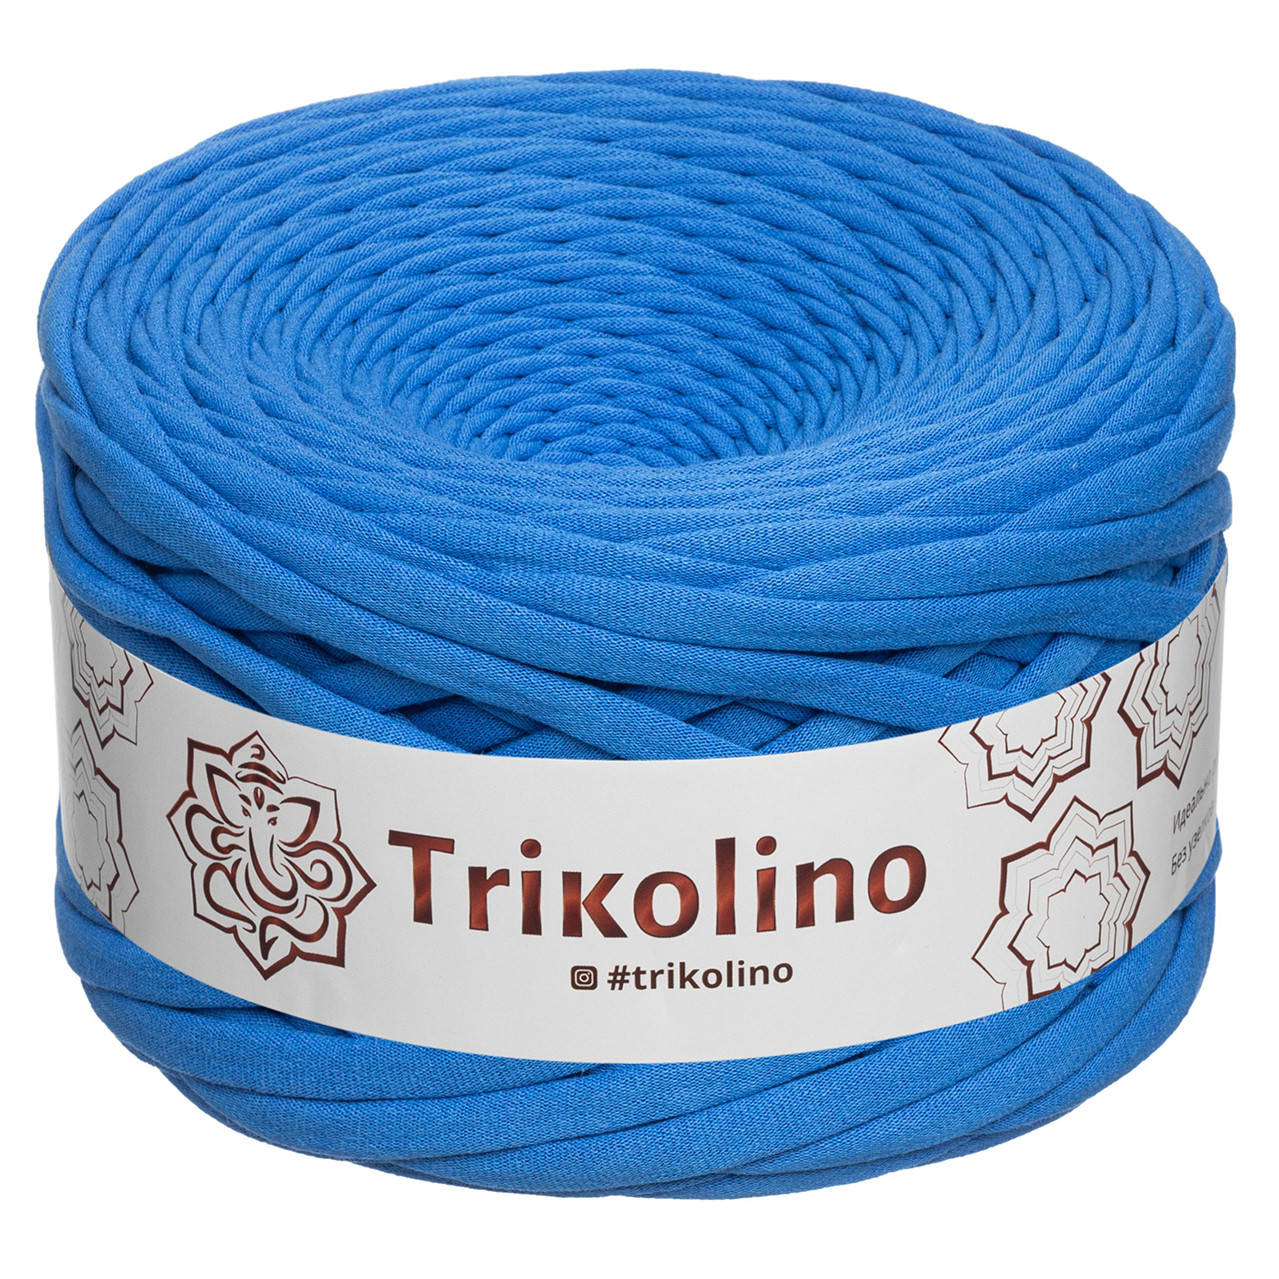 

Trikolino (Триколино) 7-9 мм 100 м королевский синий Трикотажная пряжа, нитки для вязания.